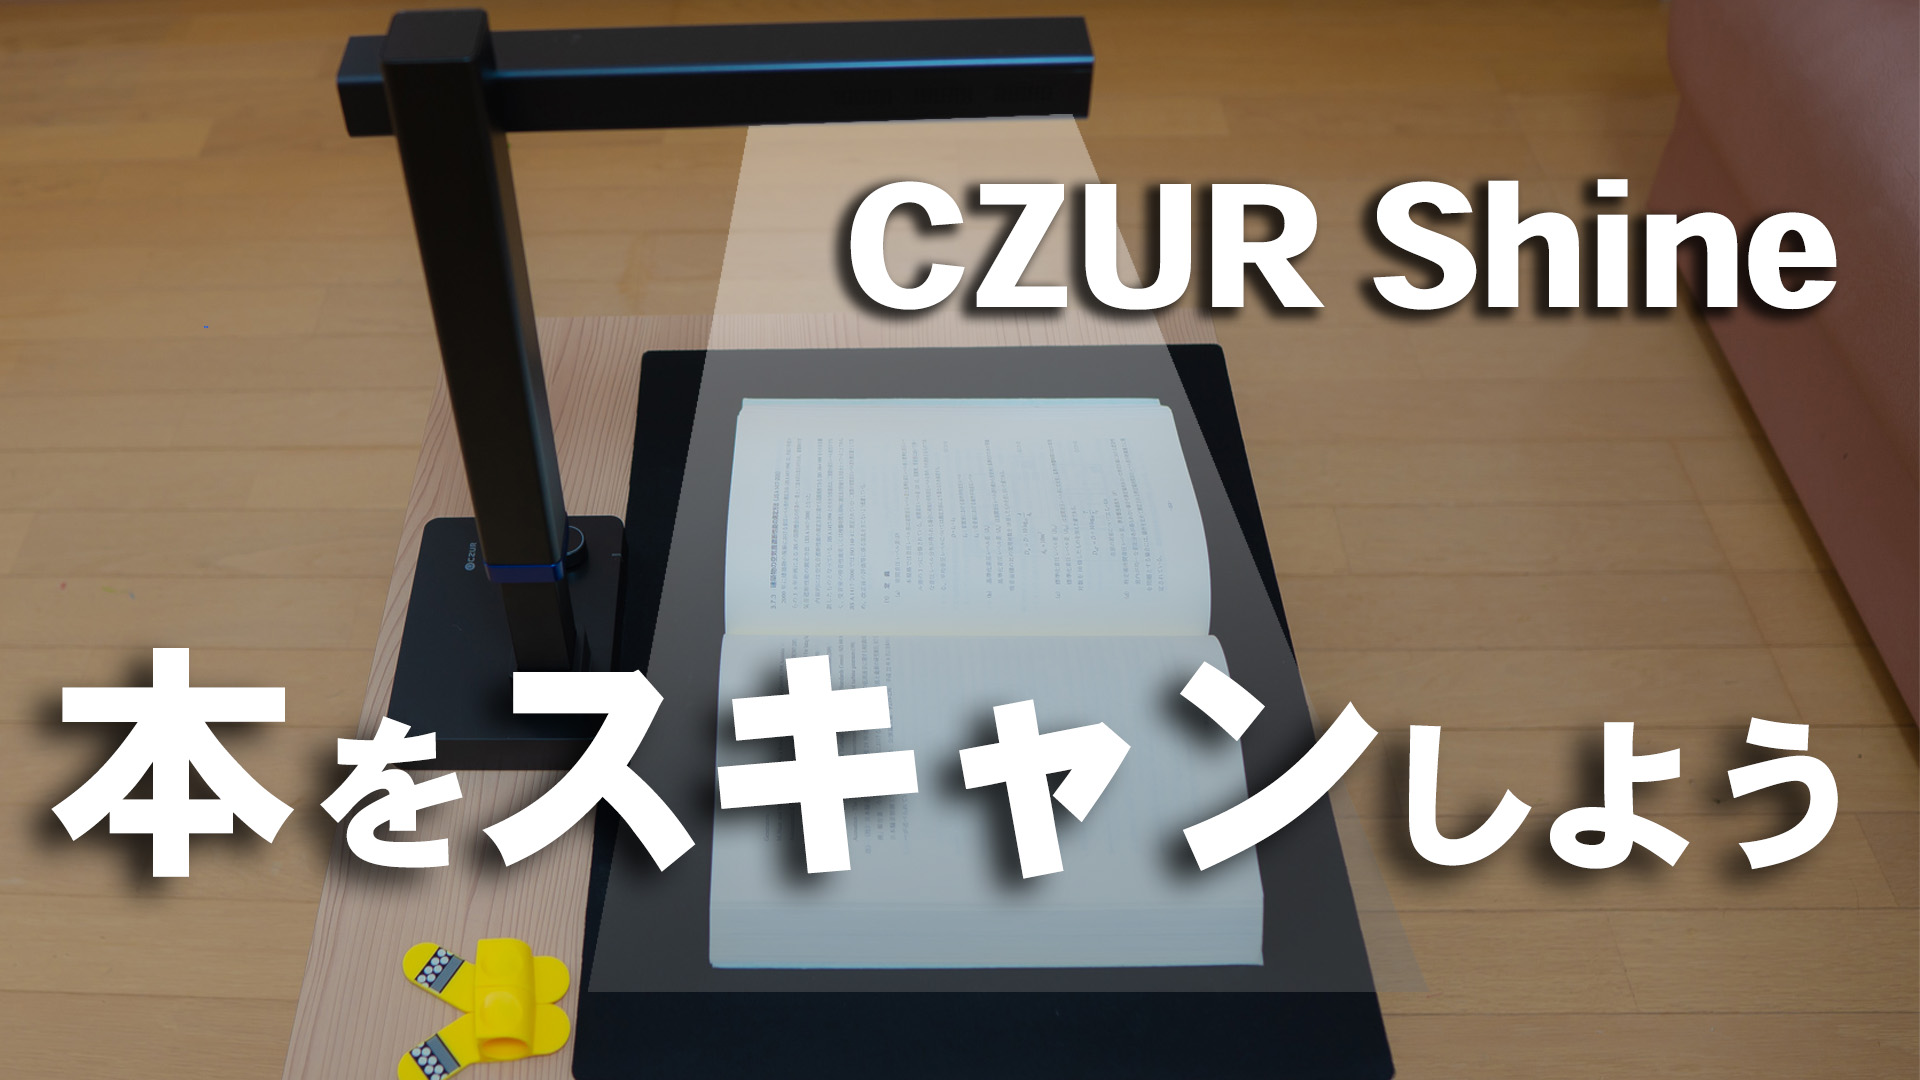 CZUR Shine 本をスキャンして持ち歩こう